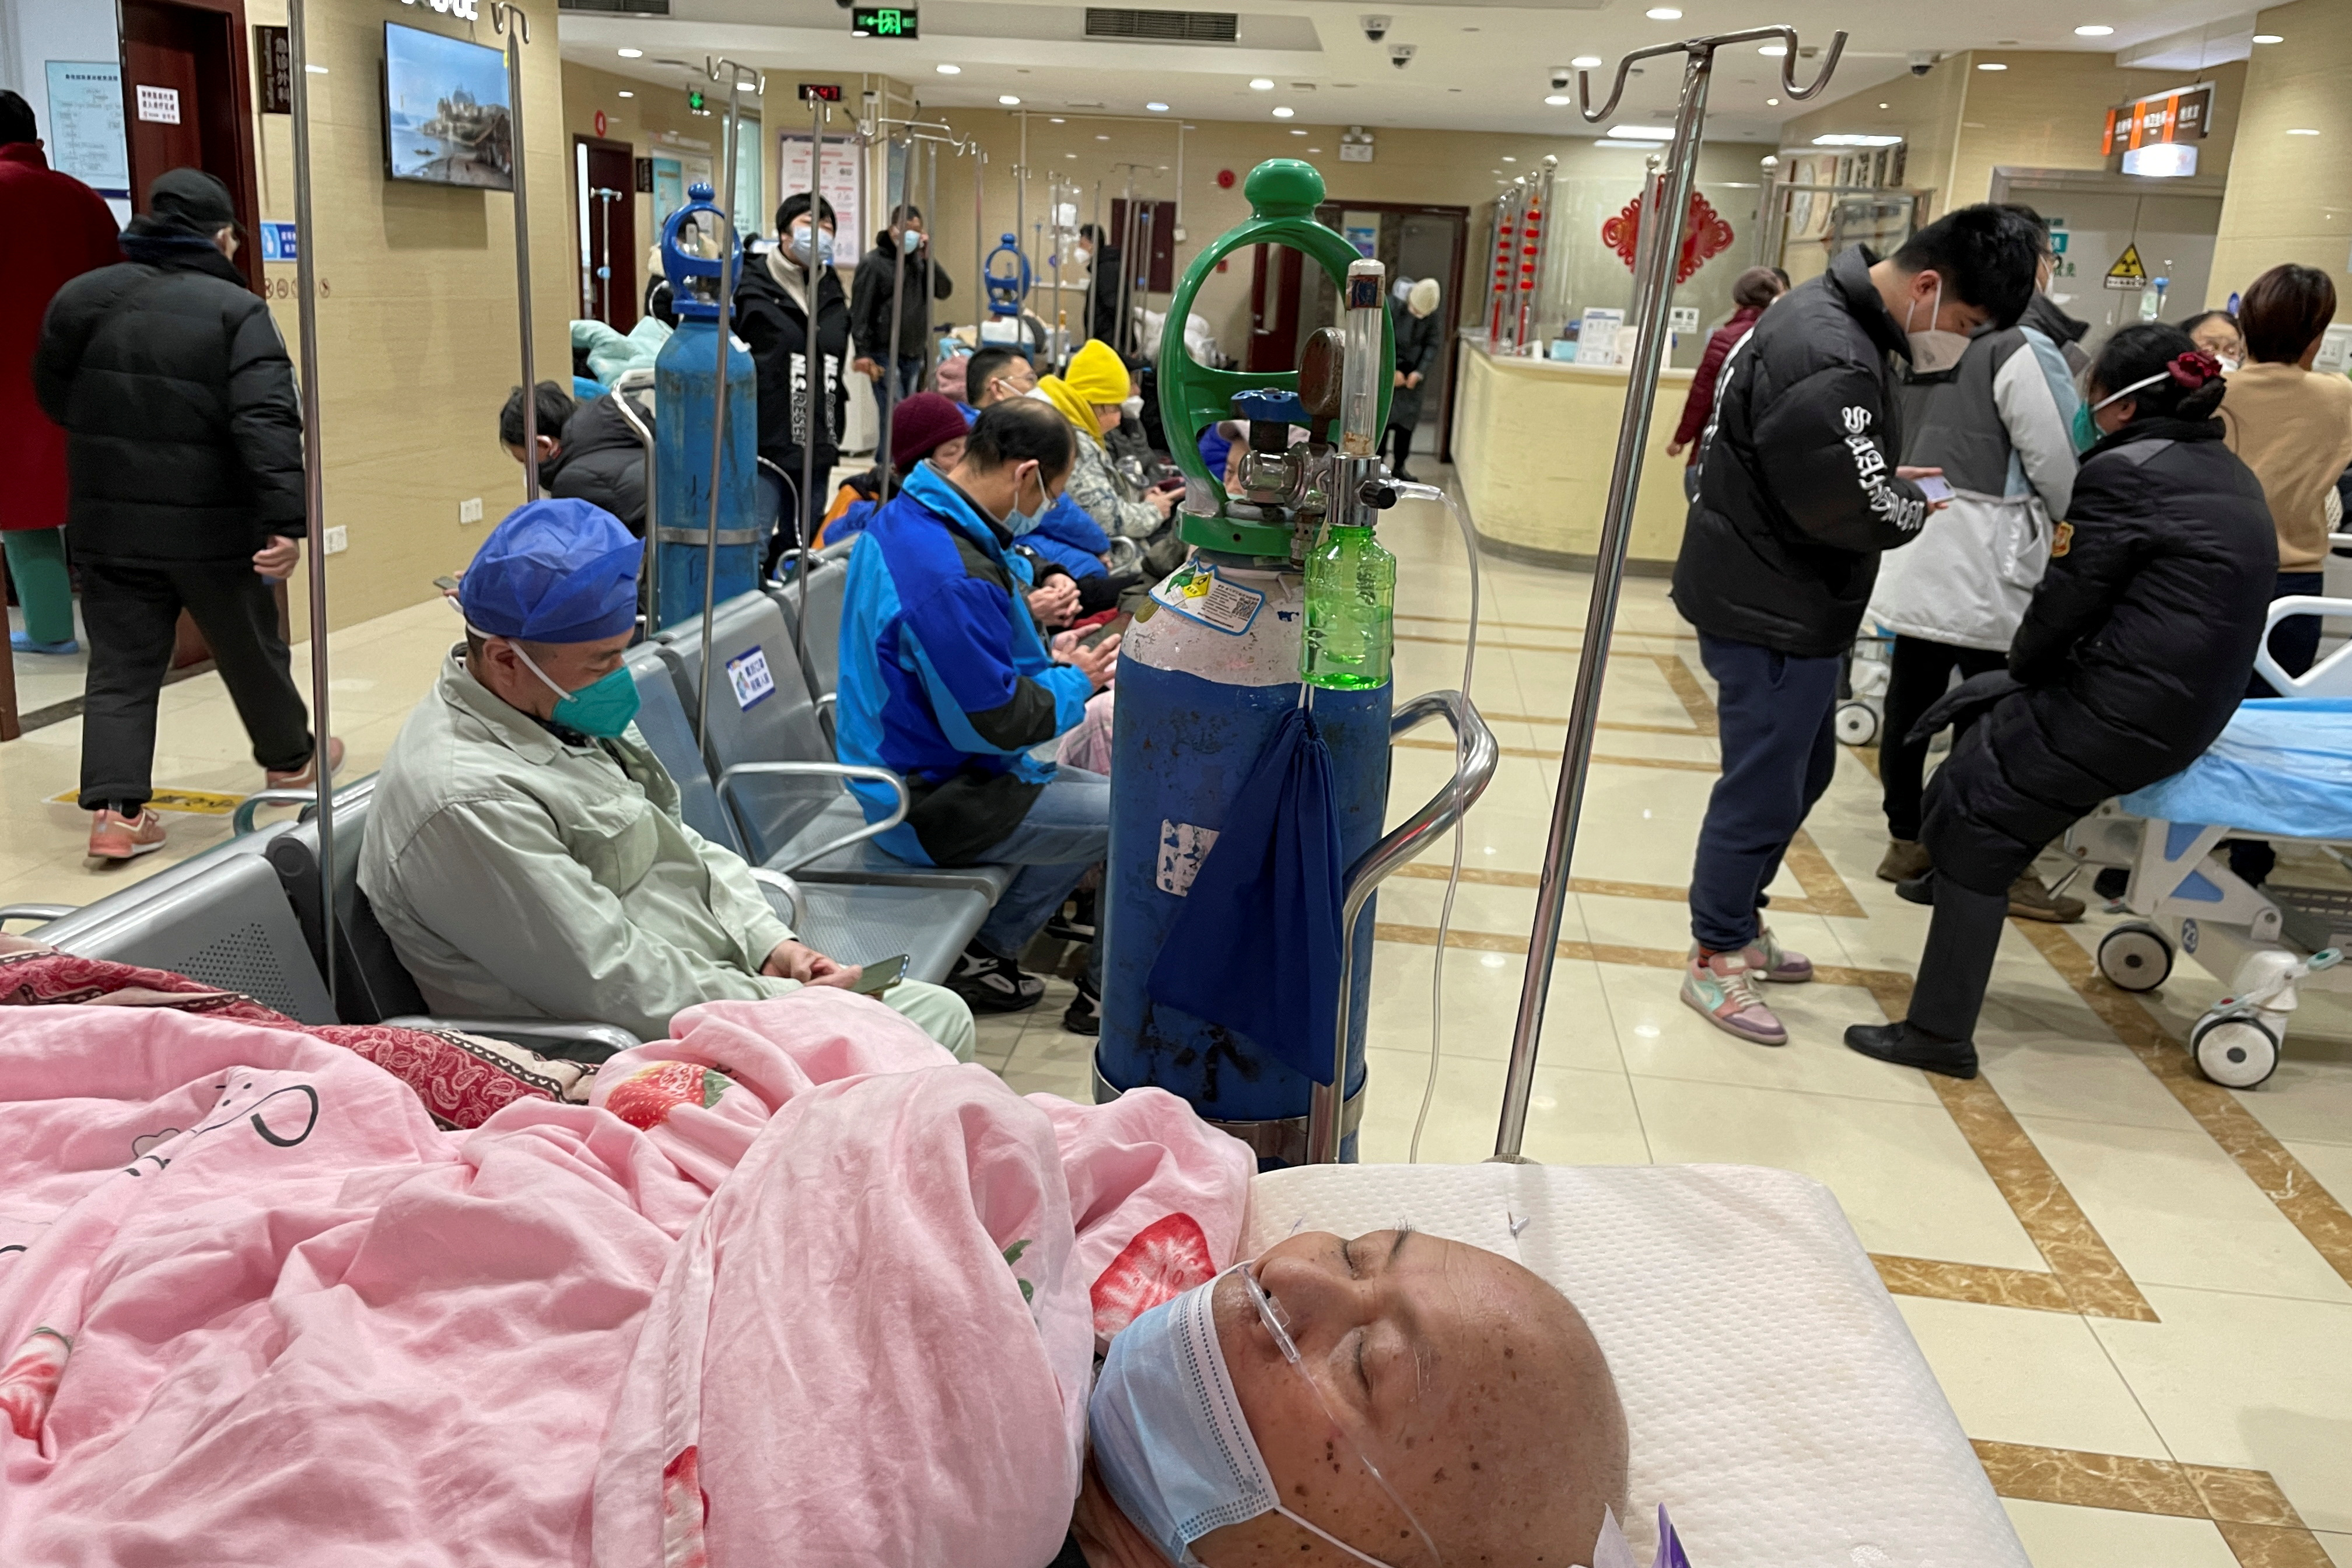 Un paciente yace en una cama en el servicio de urgencias de un hospital, en medio del brote de la enfermedad por coronavirus (COVID-19) en Shanghái, China, el 17 de enero de 2023. REUTERS/Personal
